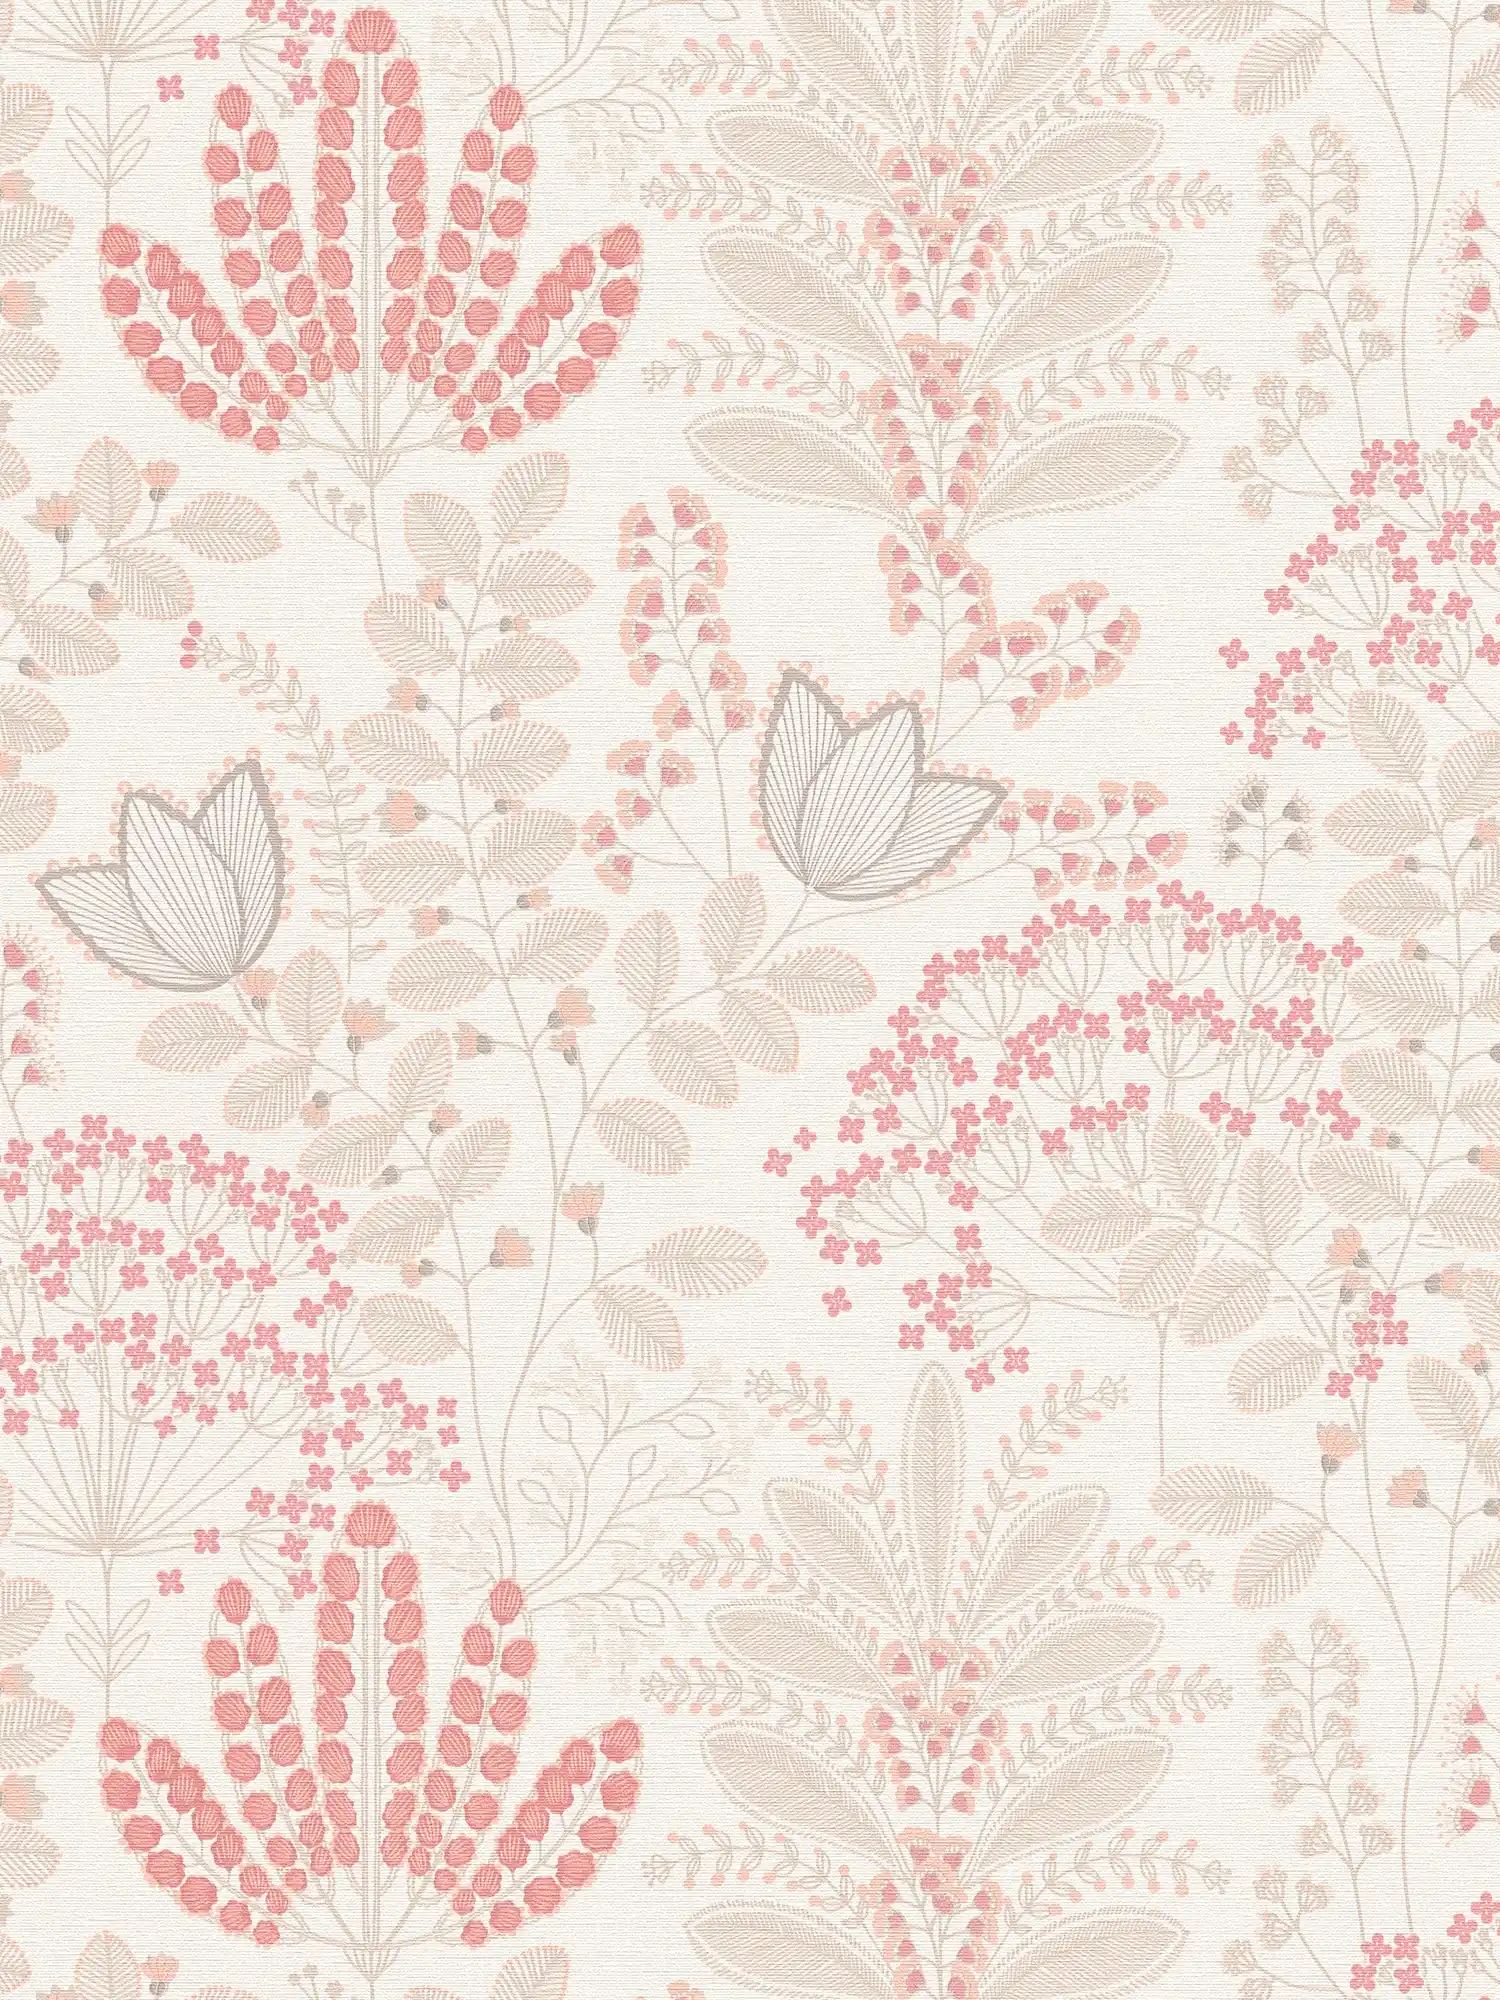 Papel pintado floral con hojas en diseño retro ligeramente texturizado, mate - blanco, topo, rosa
